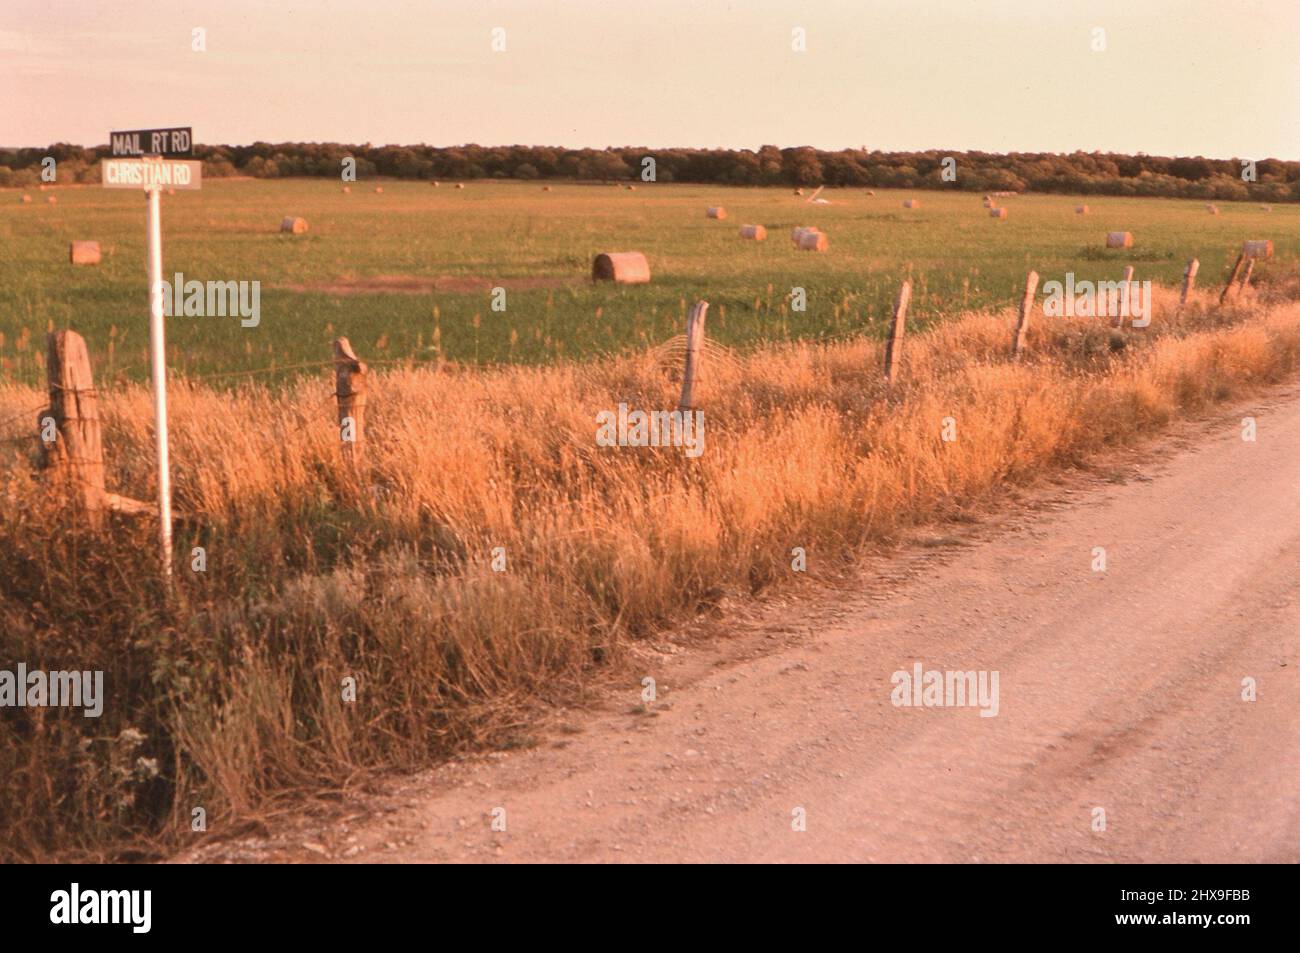 Balles rondes de foin dans un champ dans le Texas rural, le panneau routier rural montre Christian Road ca. 1996 Banque D'Images